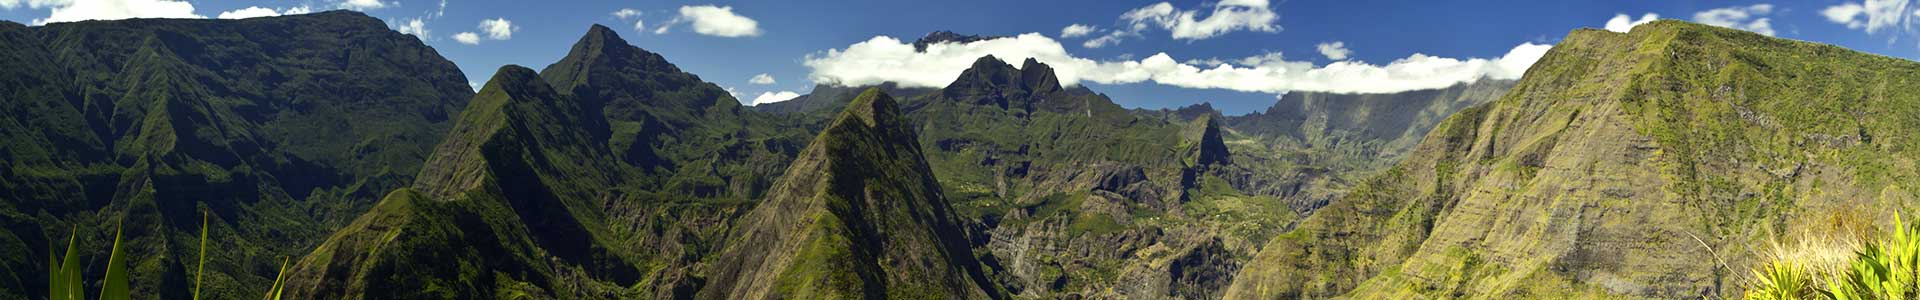 Voyage à La Réunion - TUI